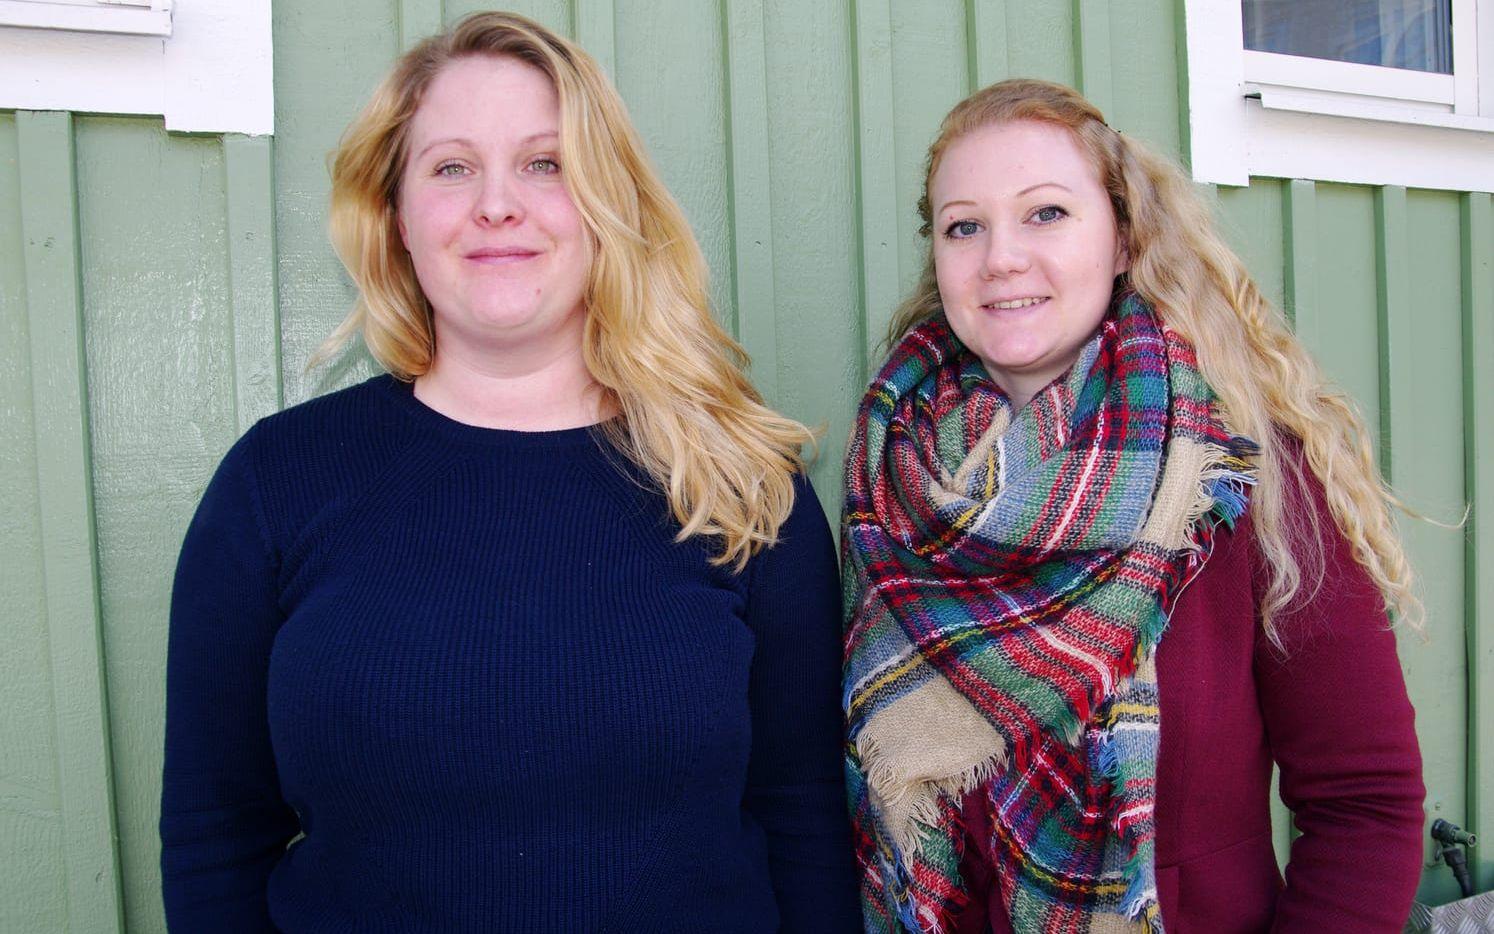 Hylte kommuns näringslivsutvecklare Fanny Pettersson och Emma Vari, studie- och yrkesvägledare på Örnaskolan. Bild: Isabel Bark